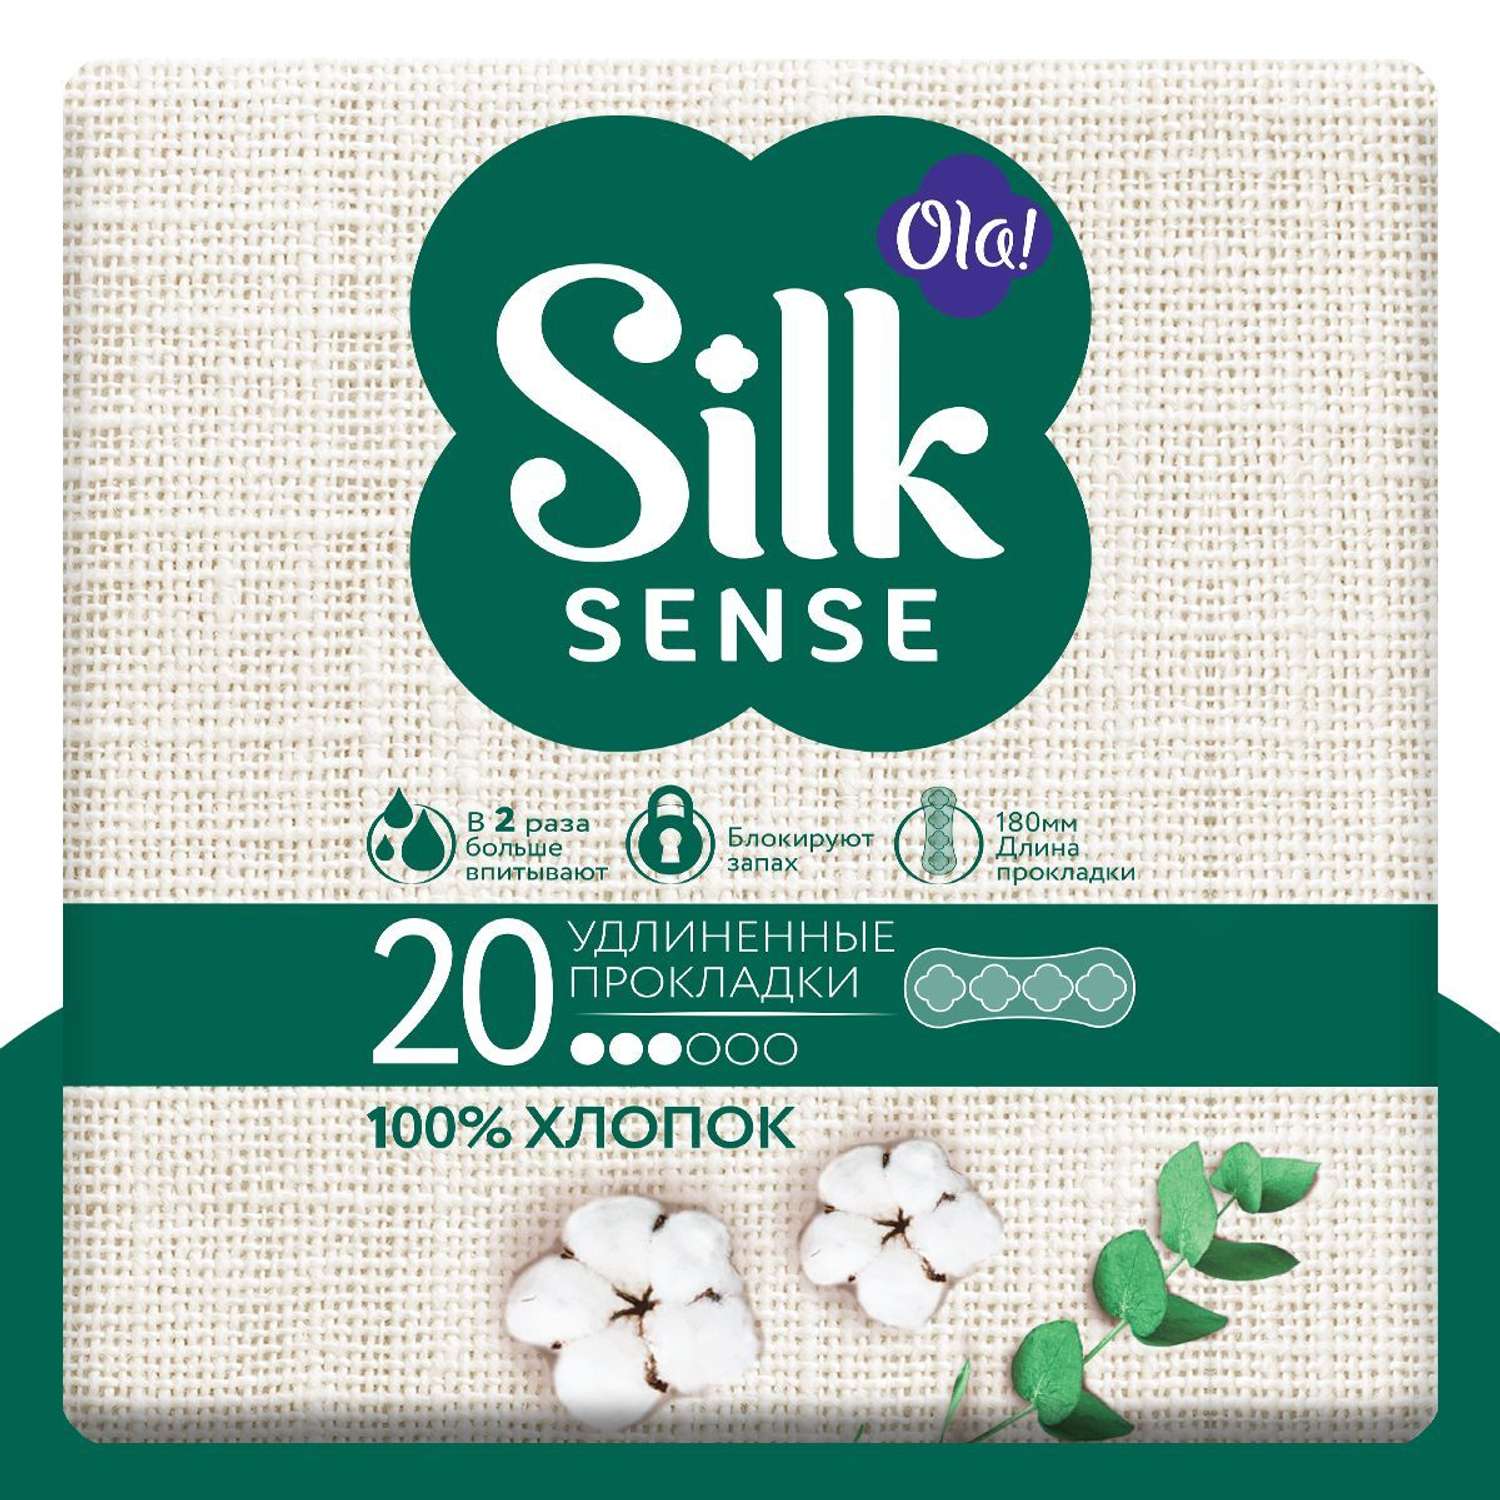 Ежедневные прокладки Ola! Silk Sense удлиненные с хлопковой поверхностью 20 шт - фото 1